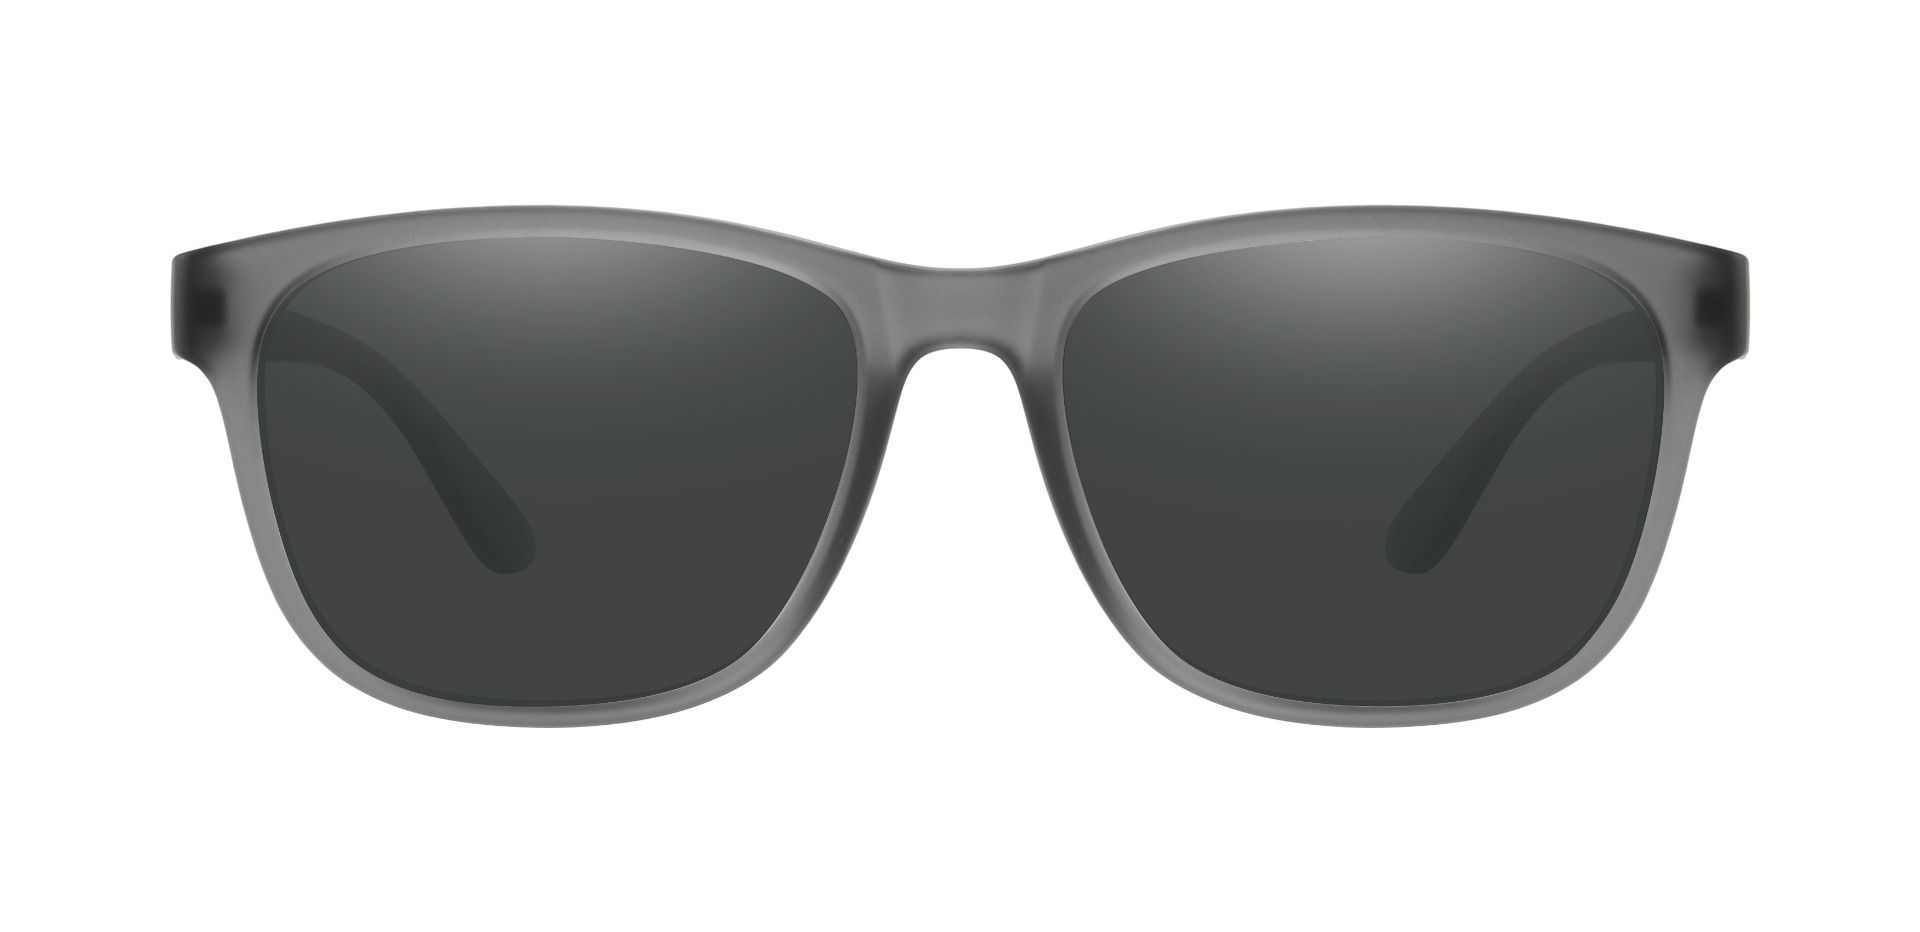 Azalea Square Prescription Sunglasses - Gray Frame With Gray Lenses